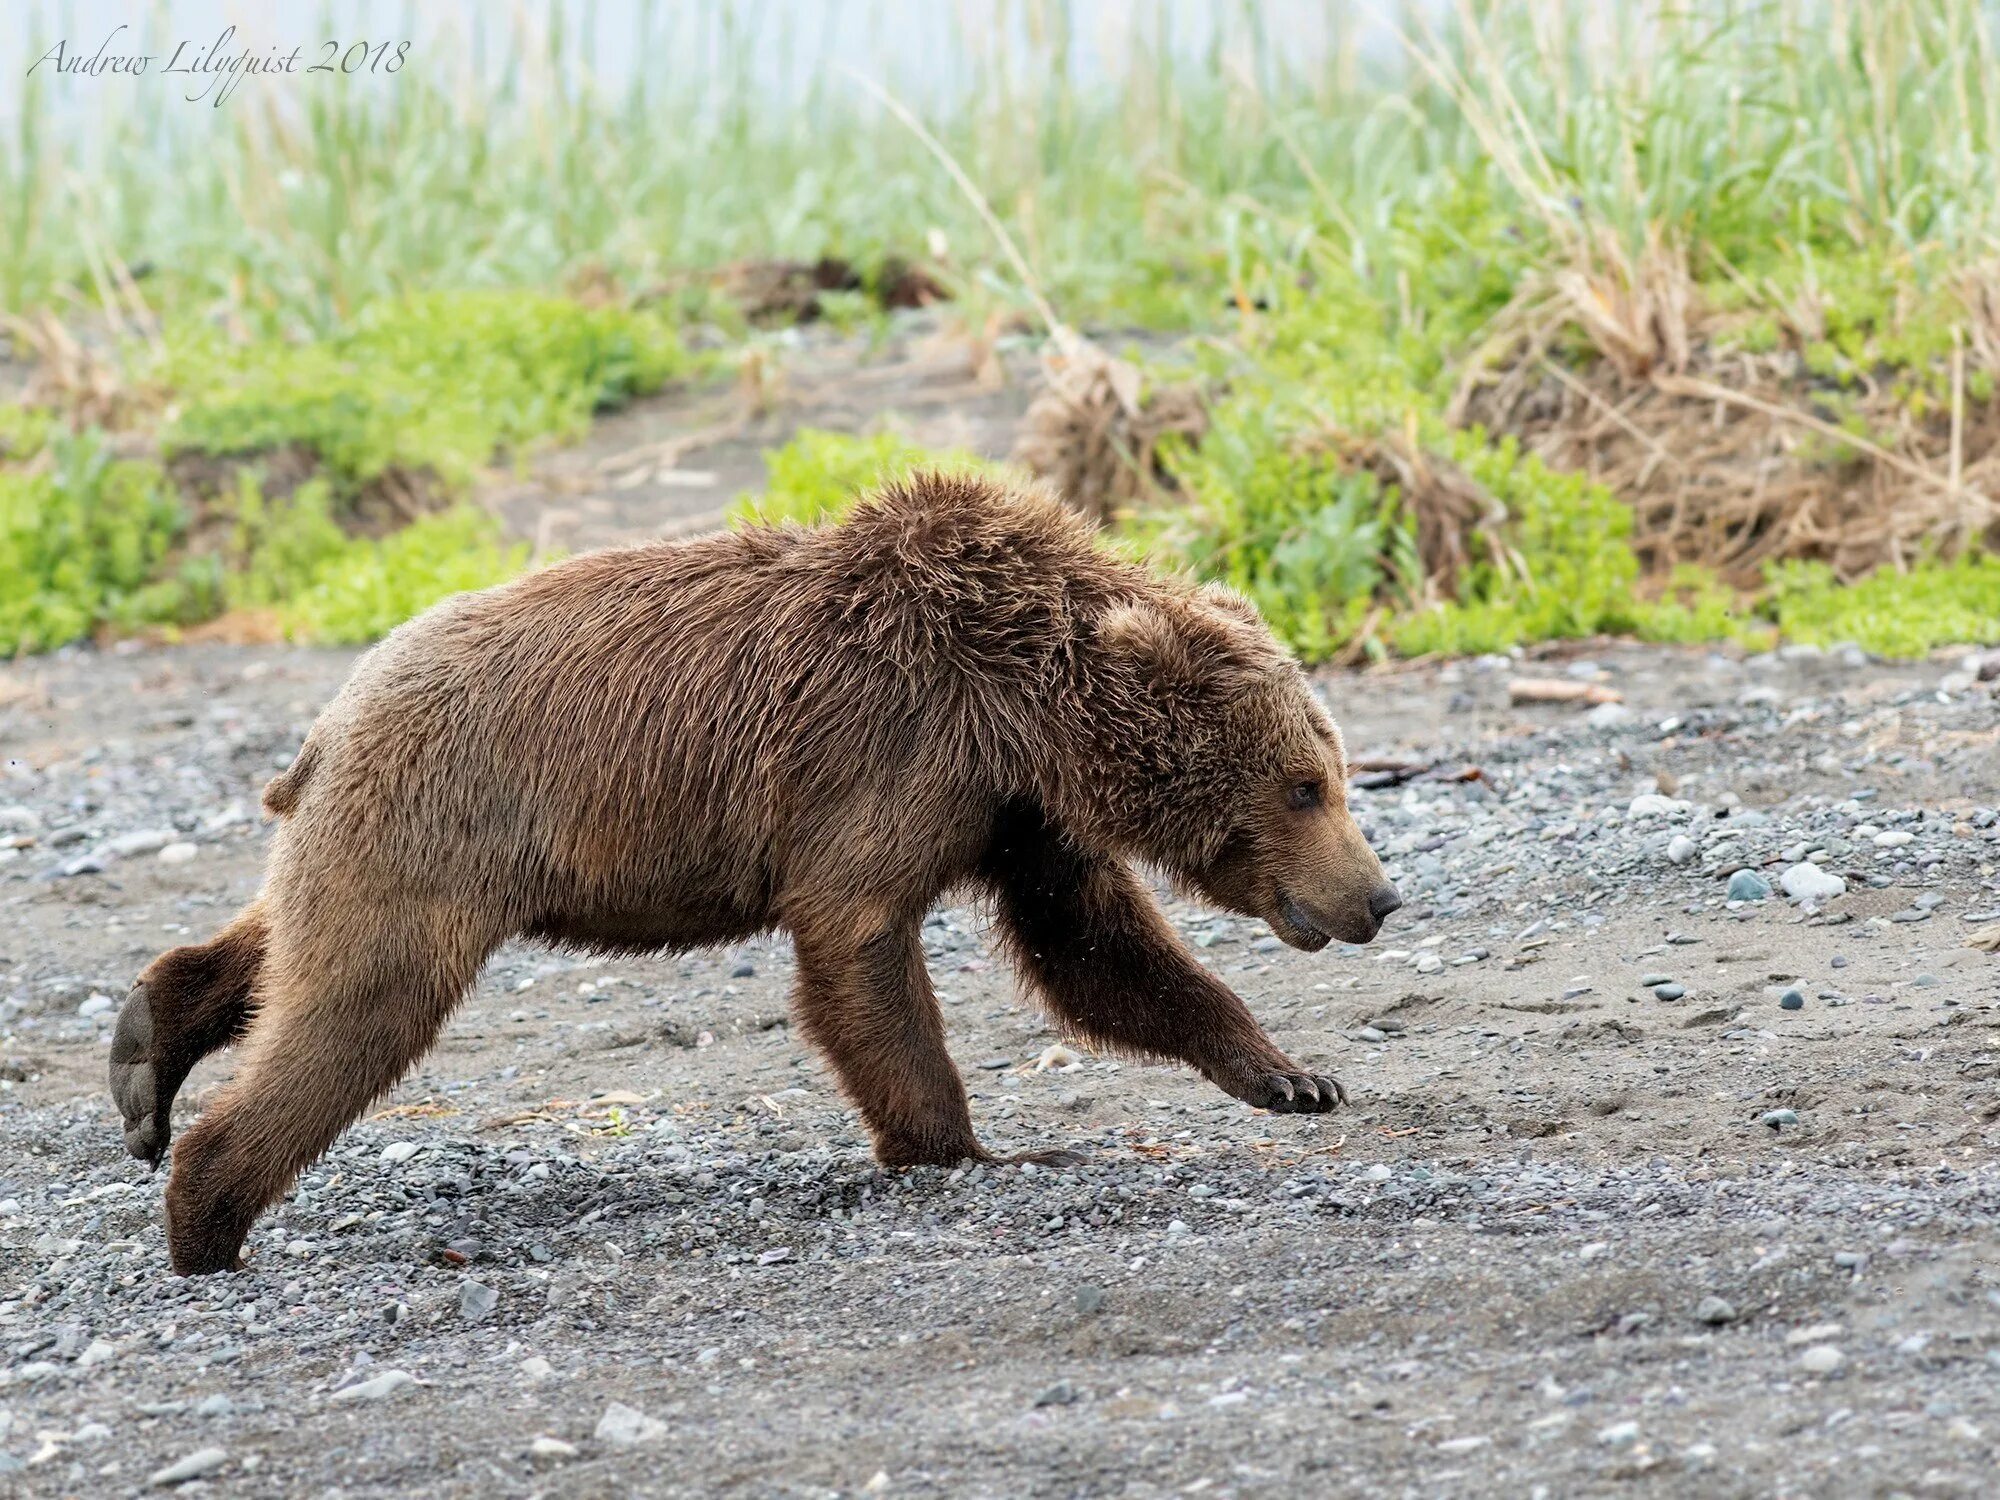 Макс скорость медведя. Бурый медведь Михайло Потапыч. Медведь бежит. Медведь убегает. Медвежонок бежит.